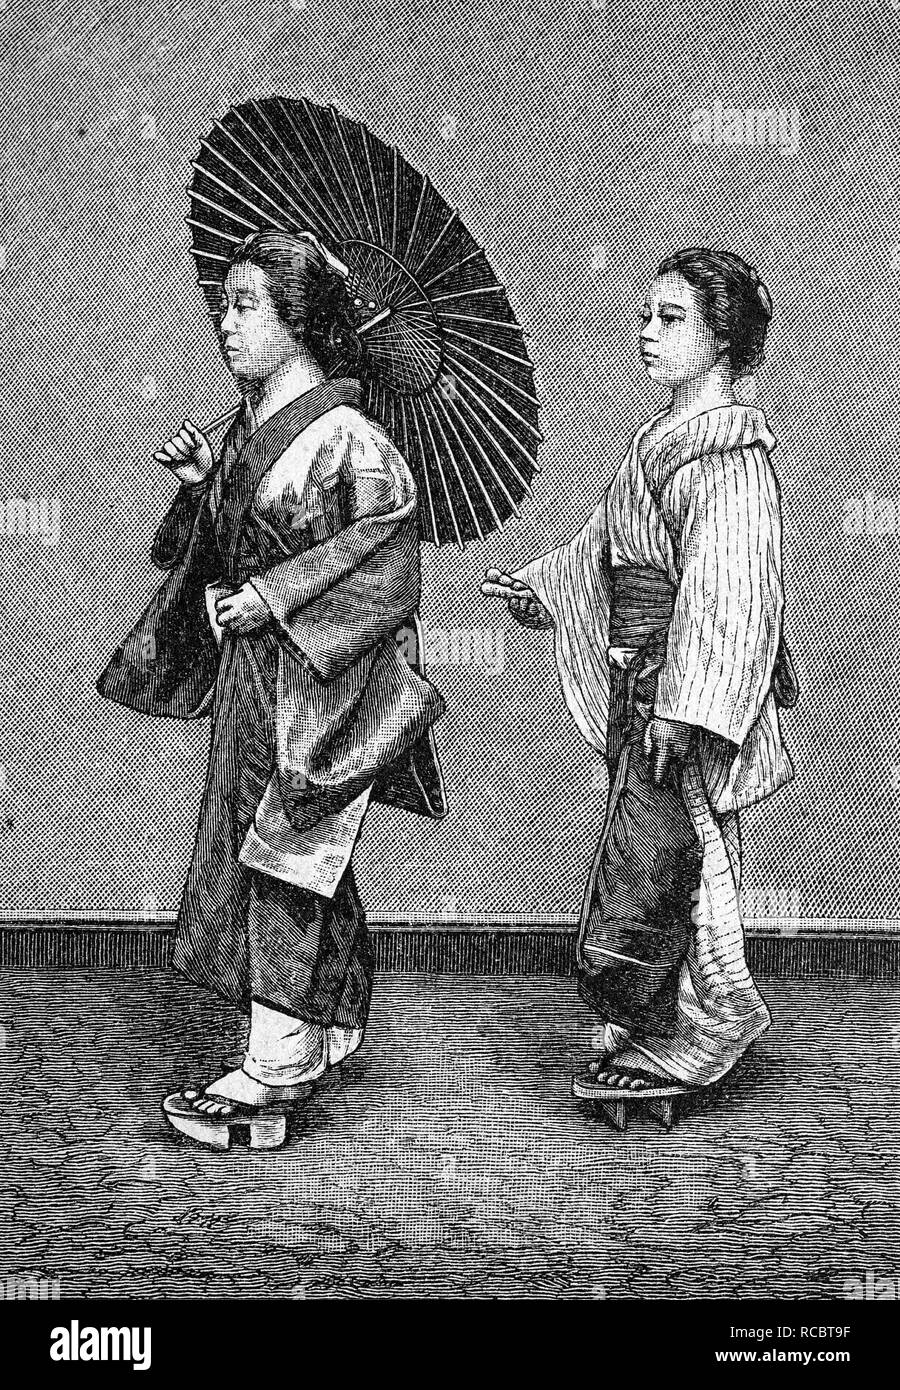 La vie de femme japonaise, la femme à un serviteur dans la rue historique, gravure, 1883 Banque D'Images